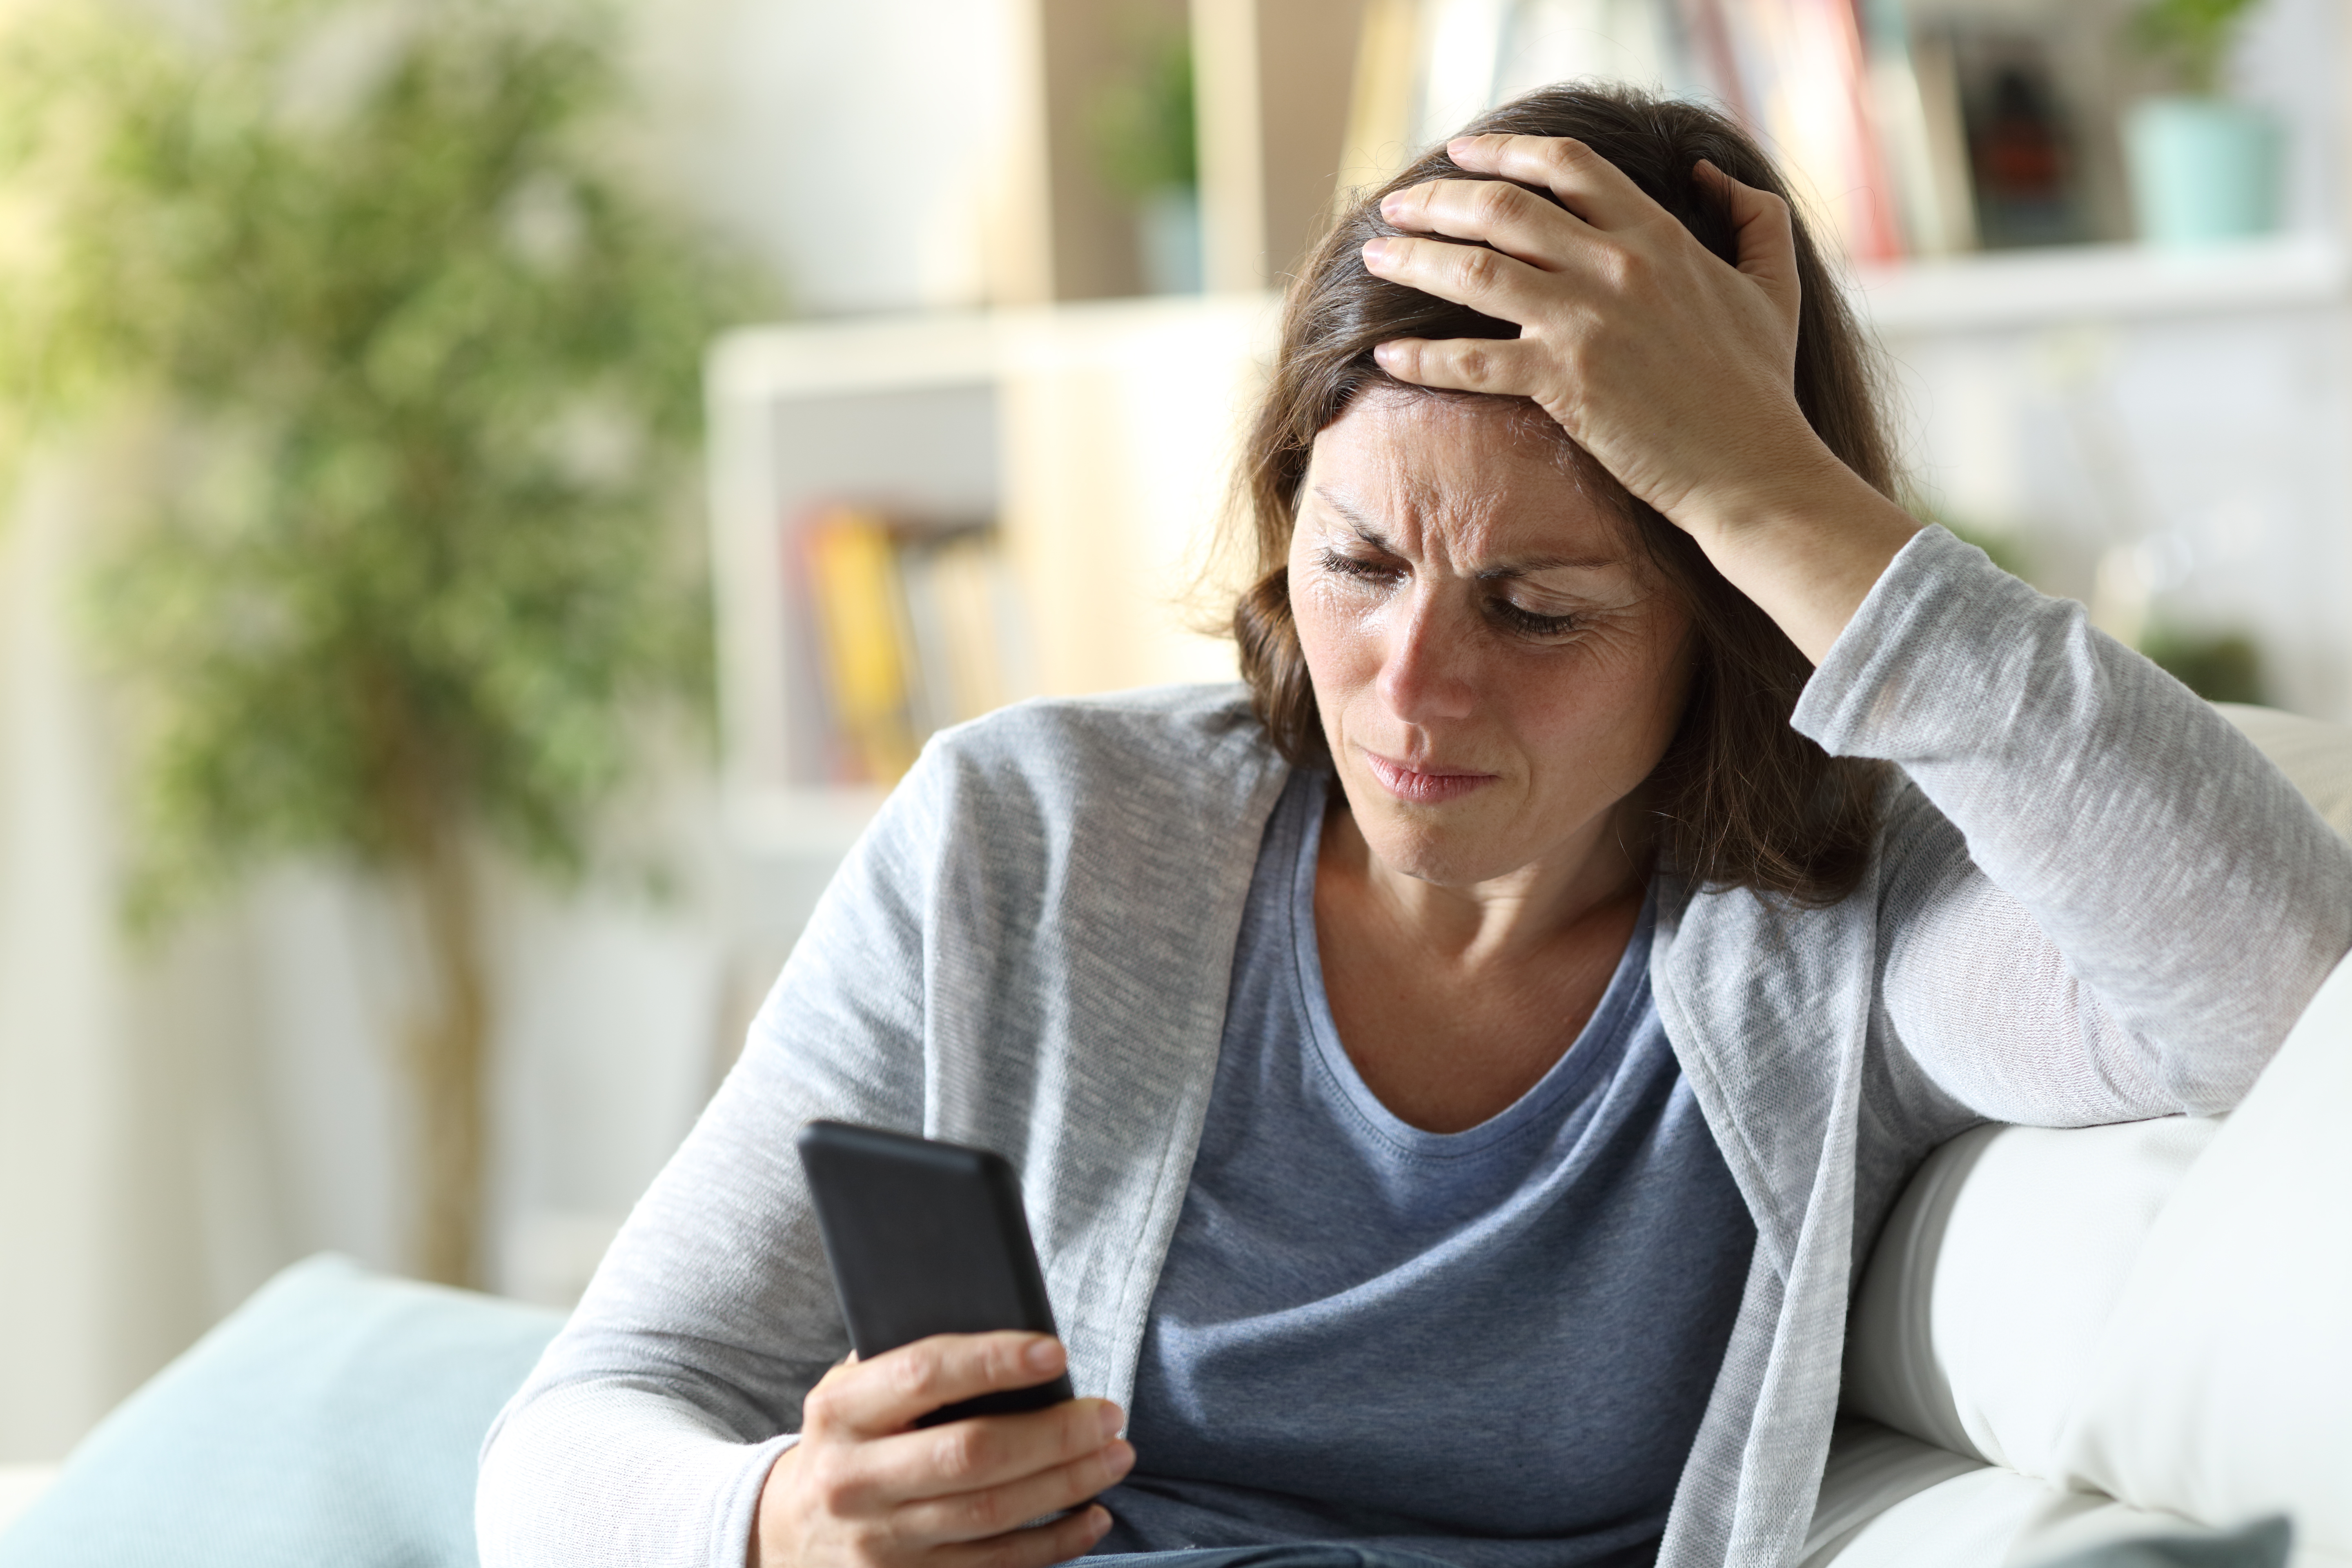 Eine Frau, die verwirrt und traurig auf ihr Telefon schaut | Quelle: Shutterstock